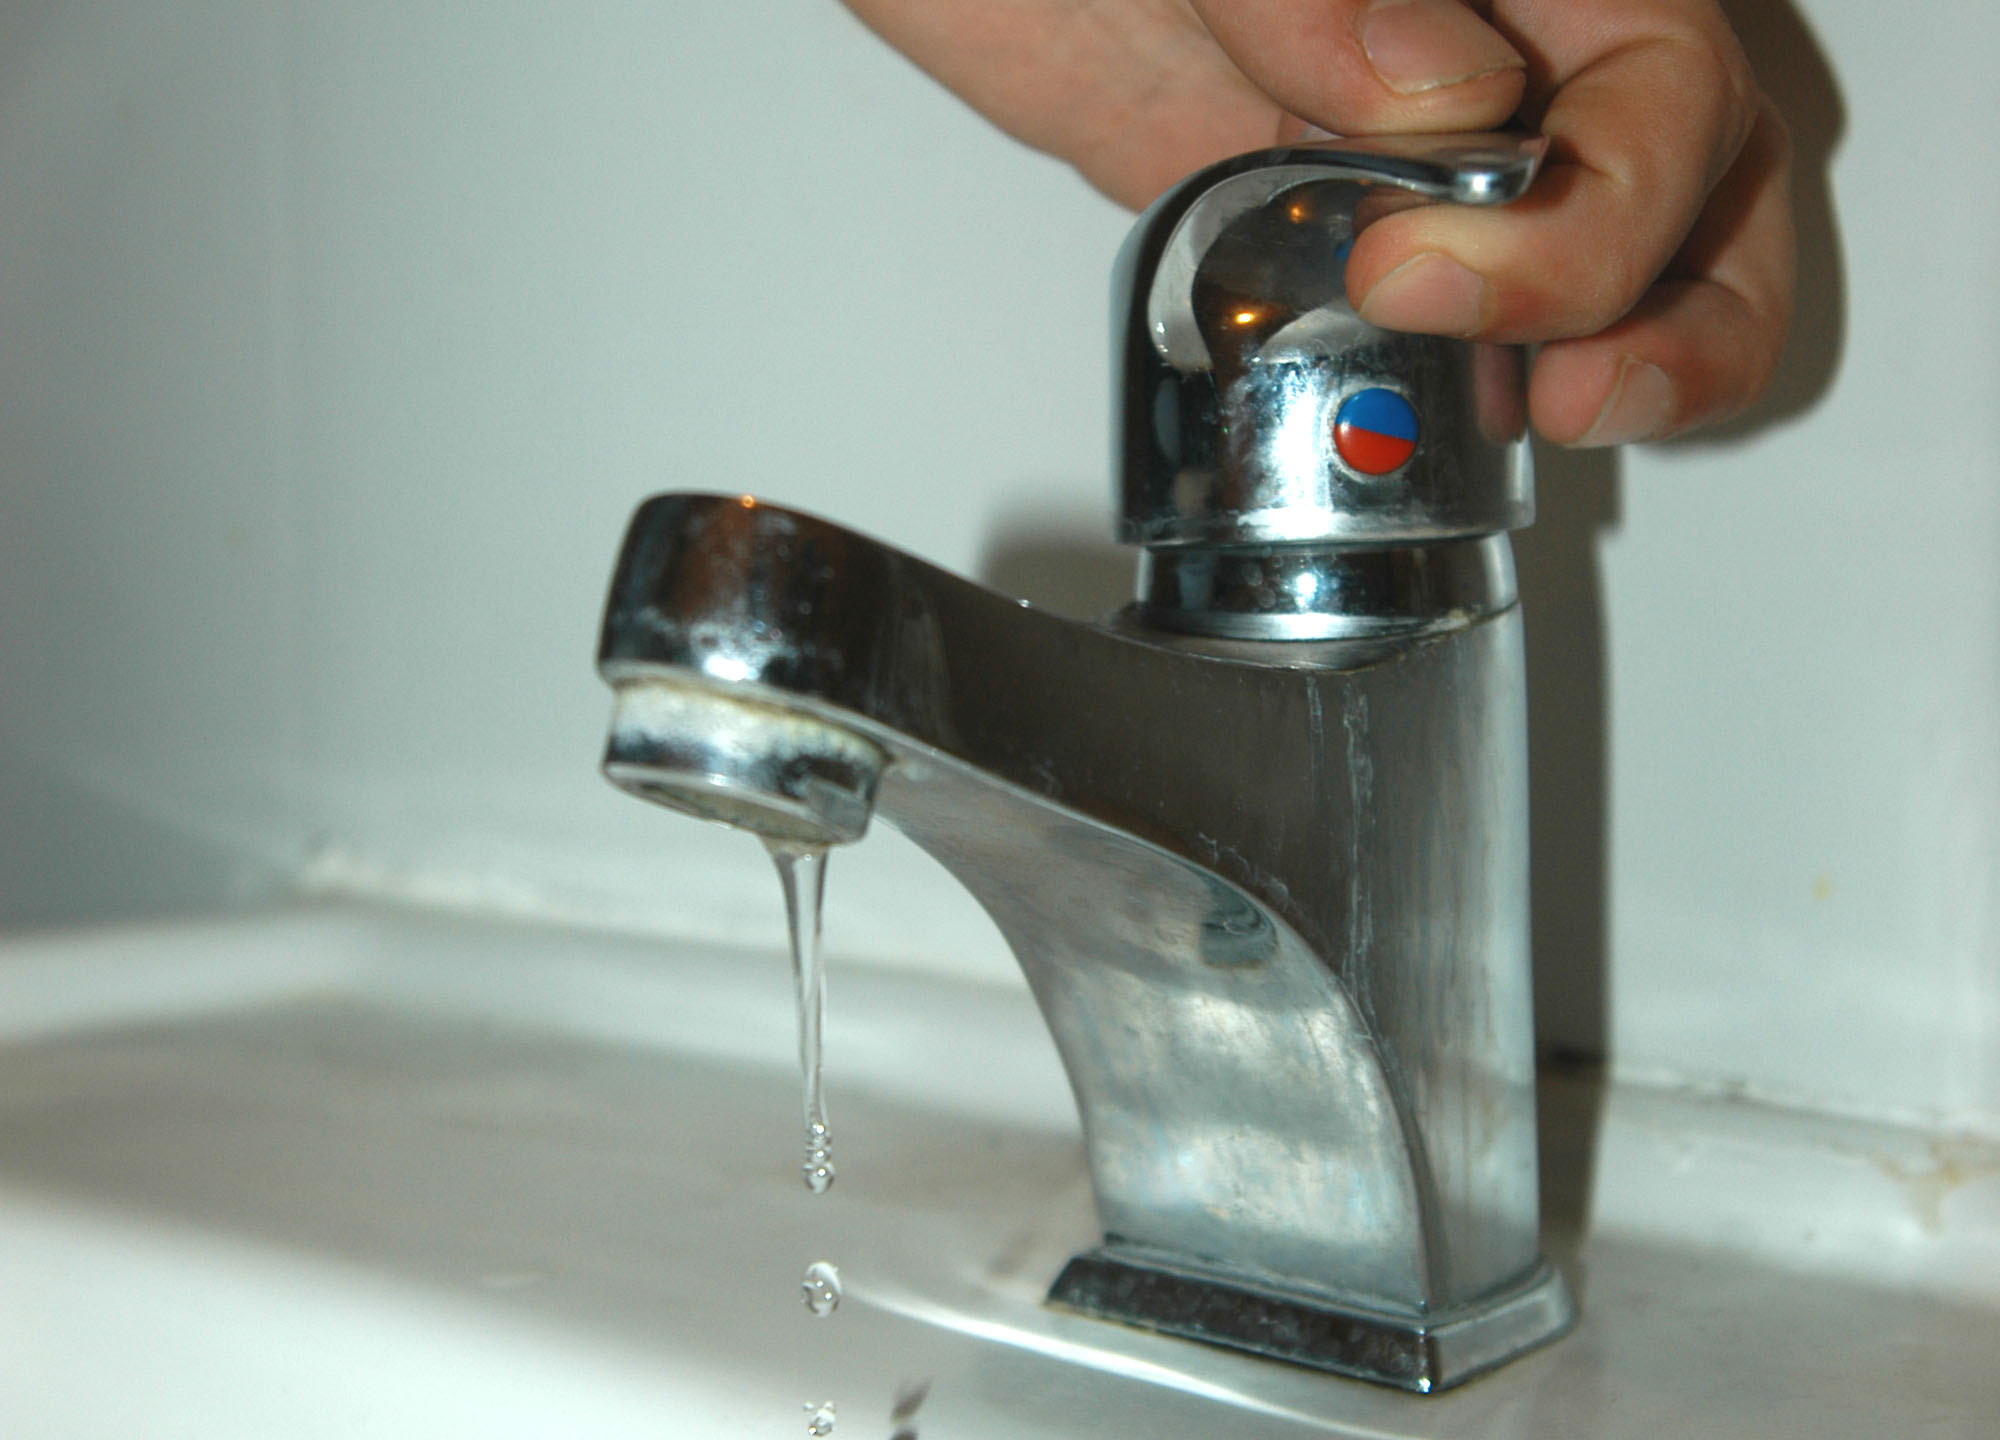 Avviso mancata erogazione acqua potabile per problemi tecnici